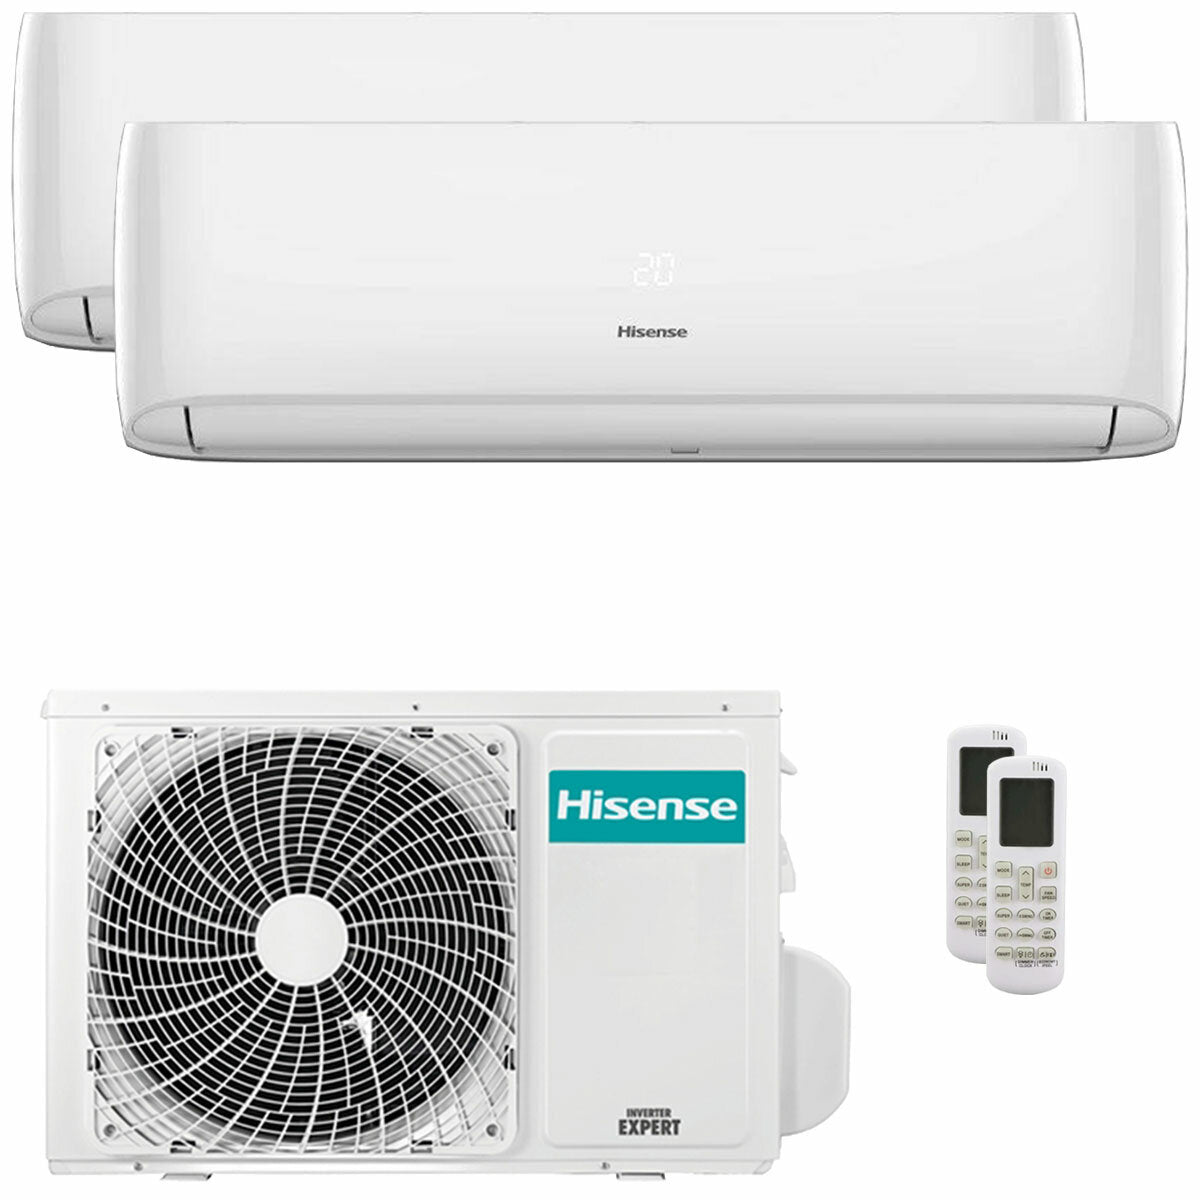 Hisense Hi-Comfort Dual-Split-Klimaanlage 7000+9000 BTU Inverter A++ WLAN-Außeneinheit 5,5 kW